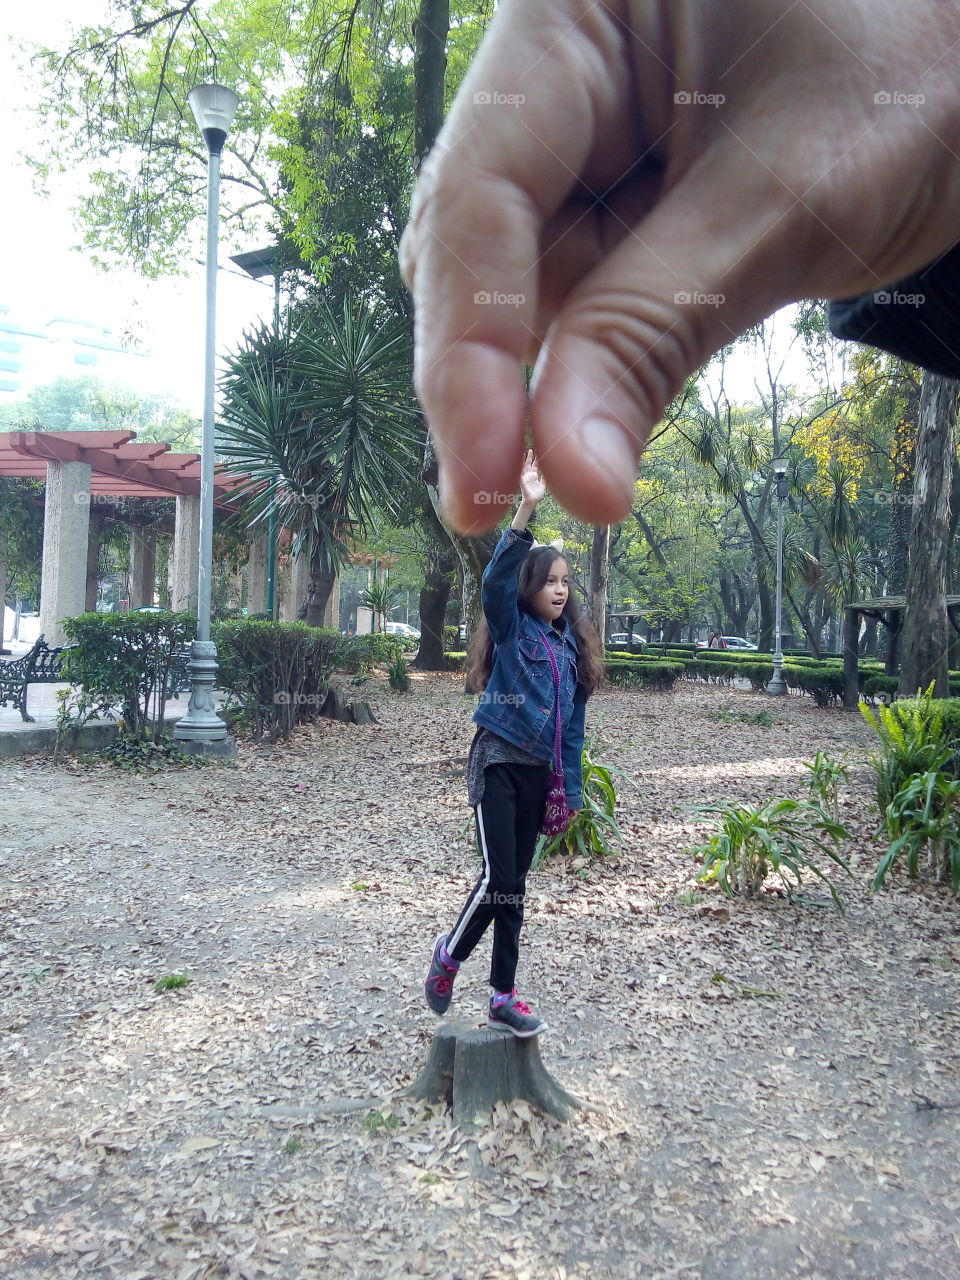 foto de niña escenificado una mano que la levanta de un tronco en un parque. fondo de plantas y estructura